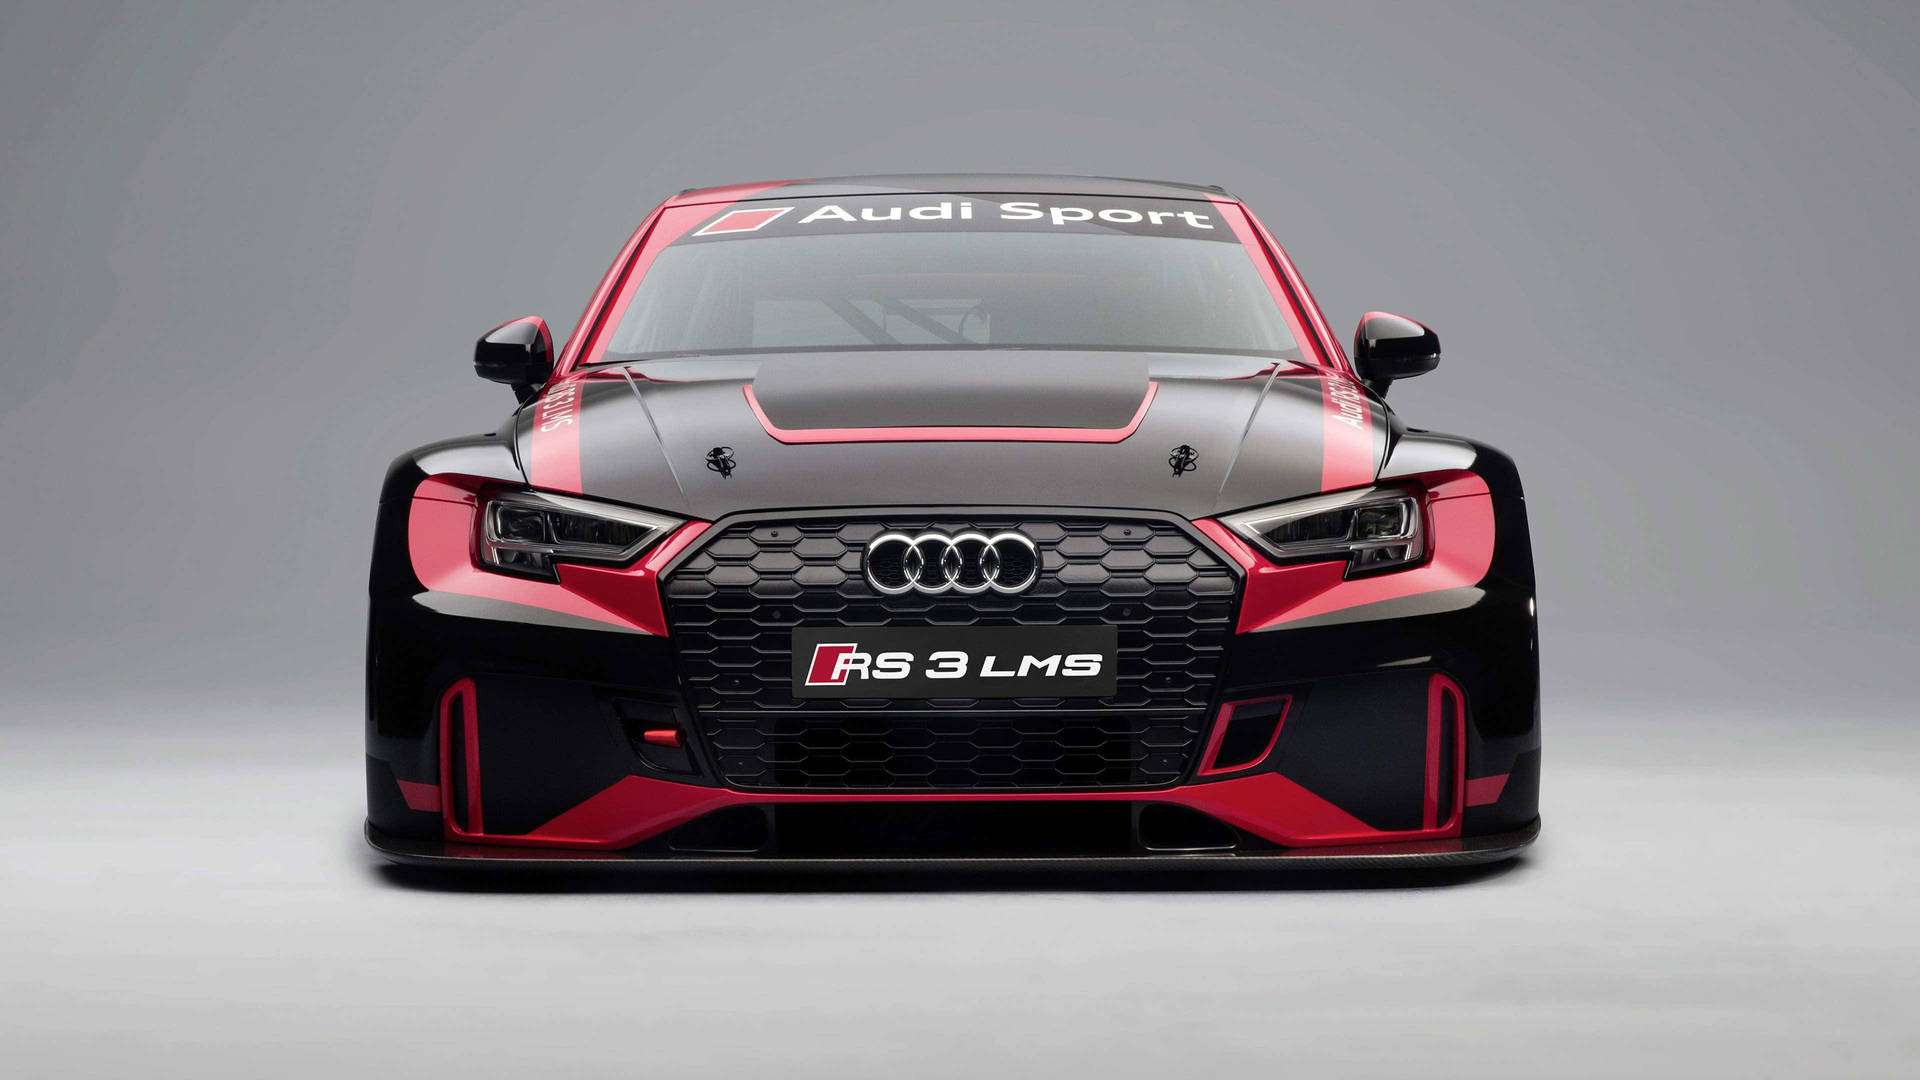 Tapet til Audi RS 3 LMS Front View: Se den nye Audi RS 3 LMS direkte foran dig. Wallpaper